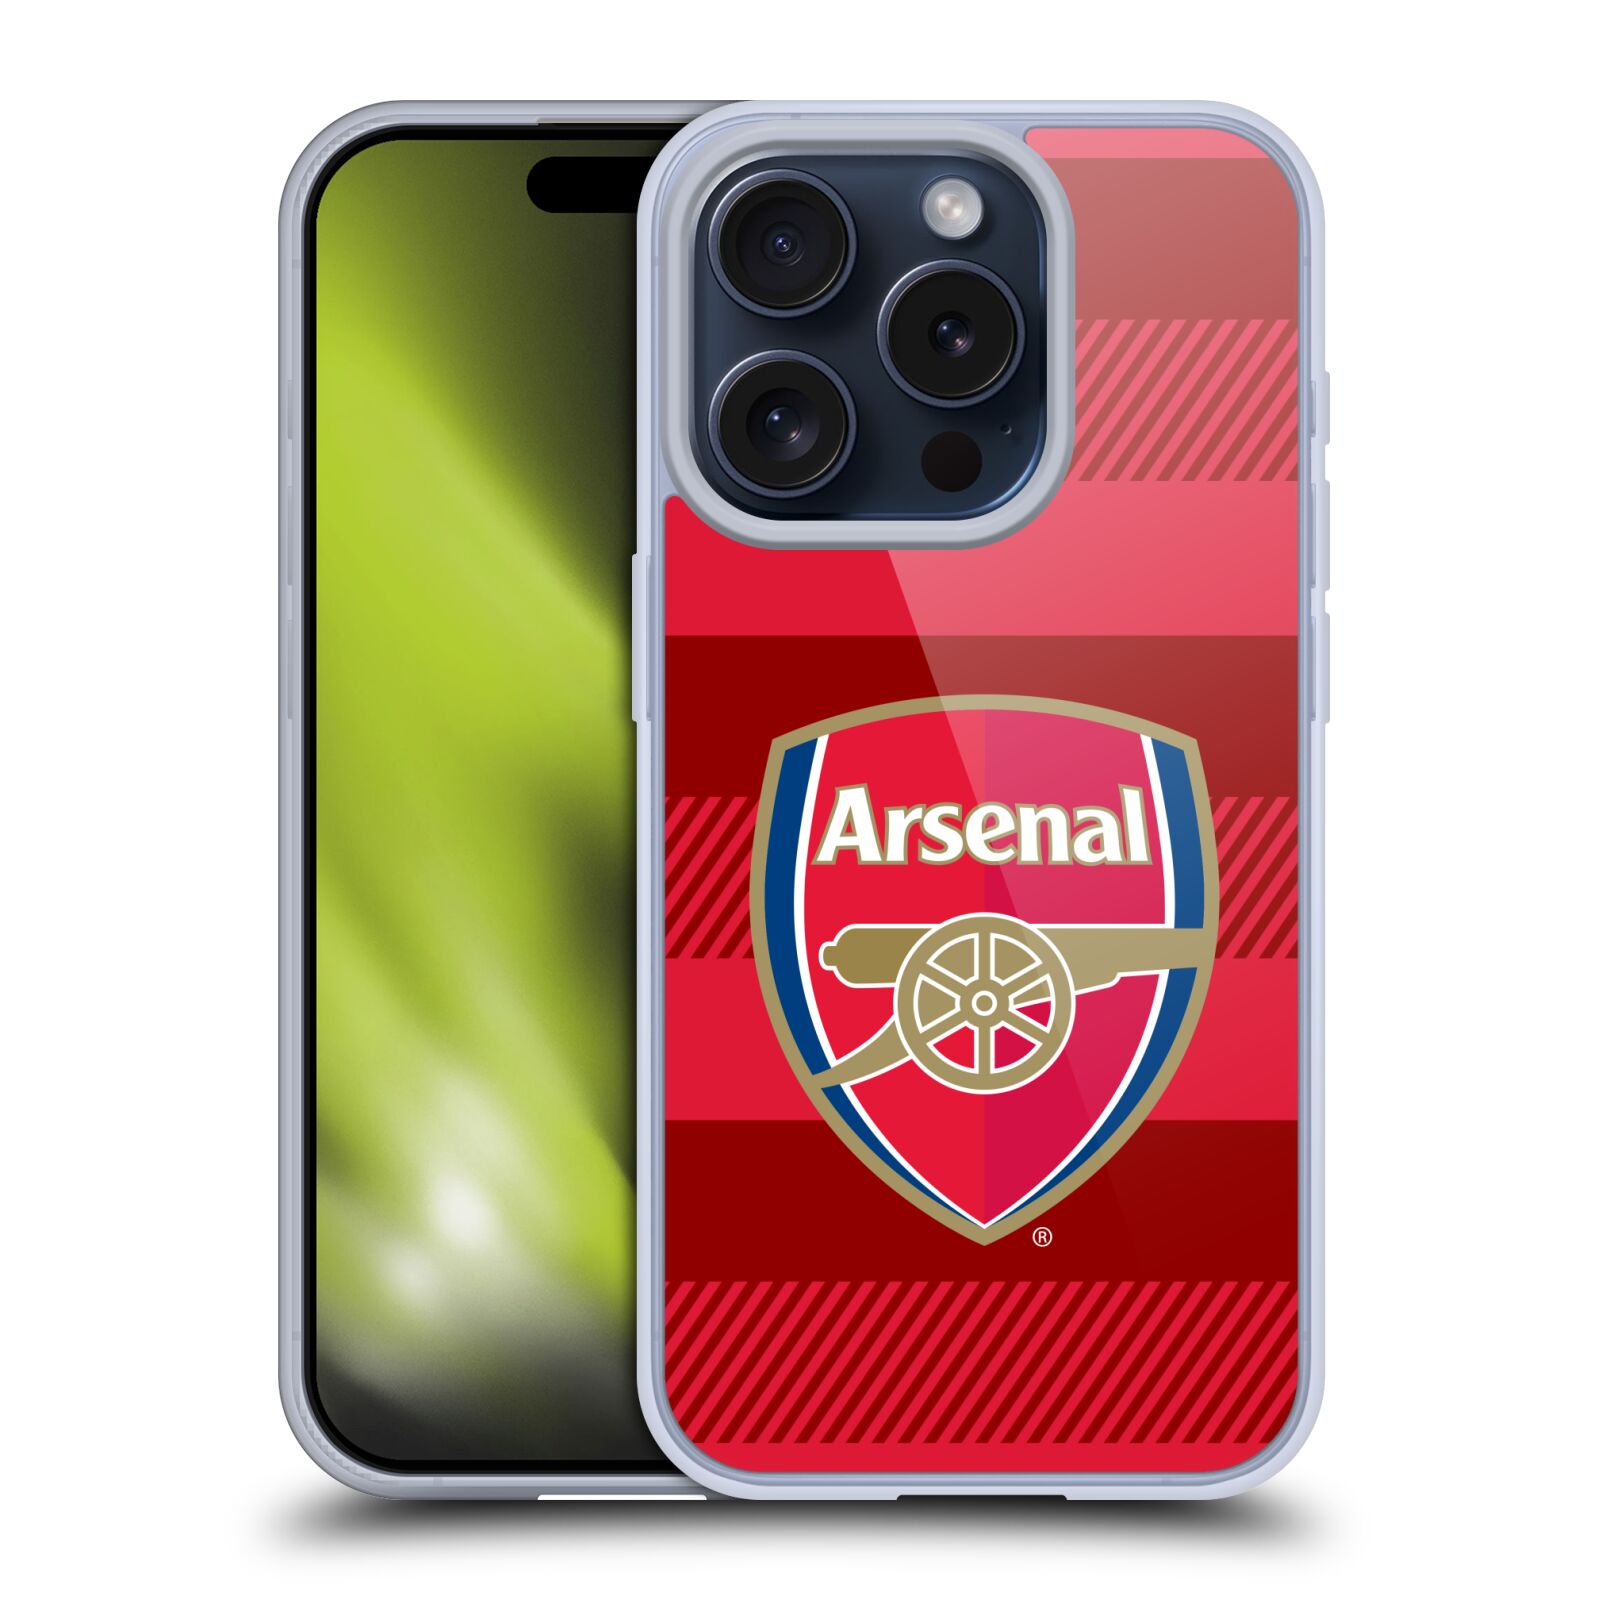 Silikonové lesklé pouzdro na mobil Apple iPhone 15 Pro - Head Case - Arsenal FC - Logo s pruhy (Silikonový lesklý kryt, obal, pouzdro na mobilní telefon s motivem klubu Arsenal FC - Logo s pruhy pro Apple iPhone 15 Pro)